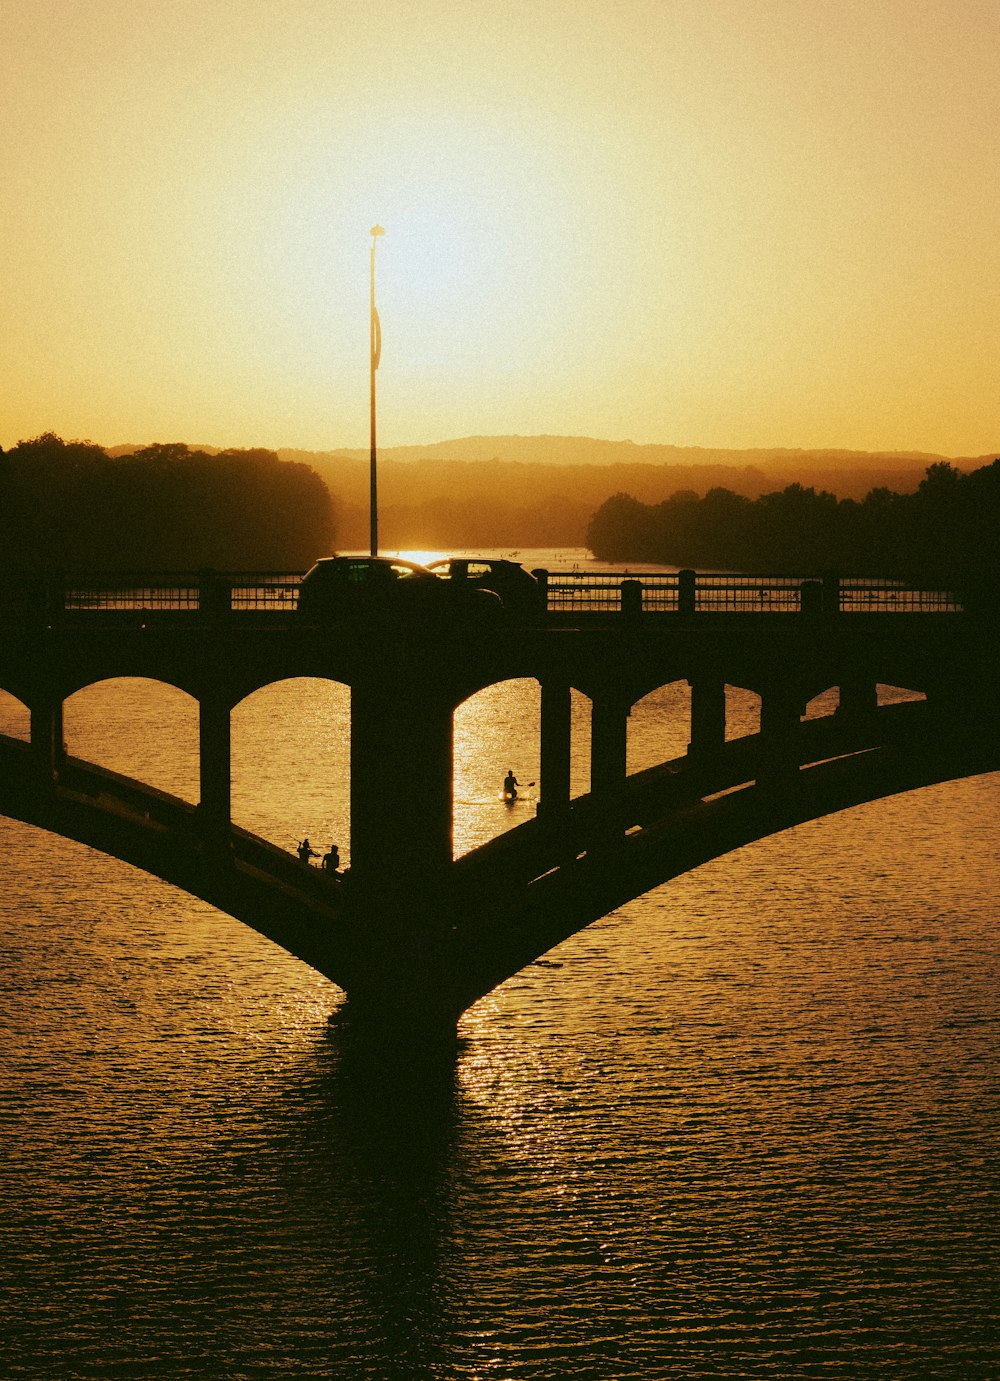 日没時の水面に架かる橋のシルエット